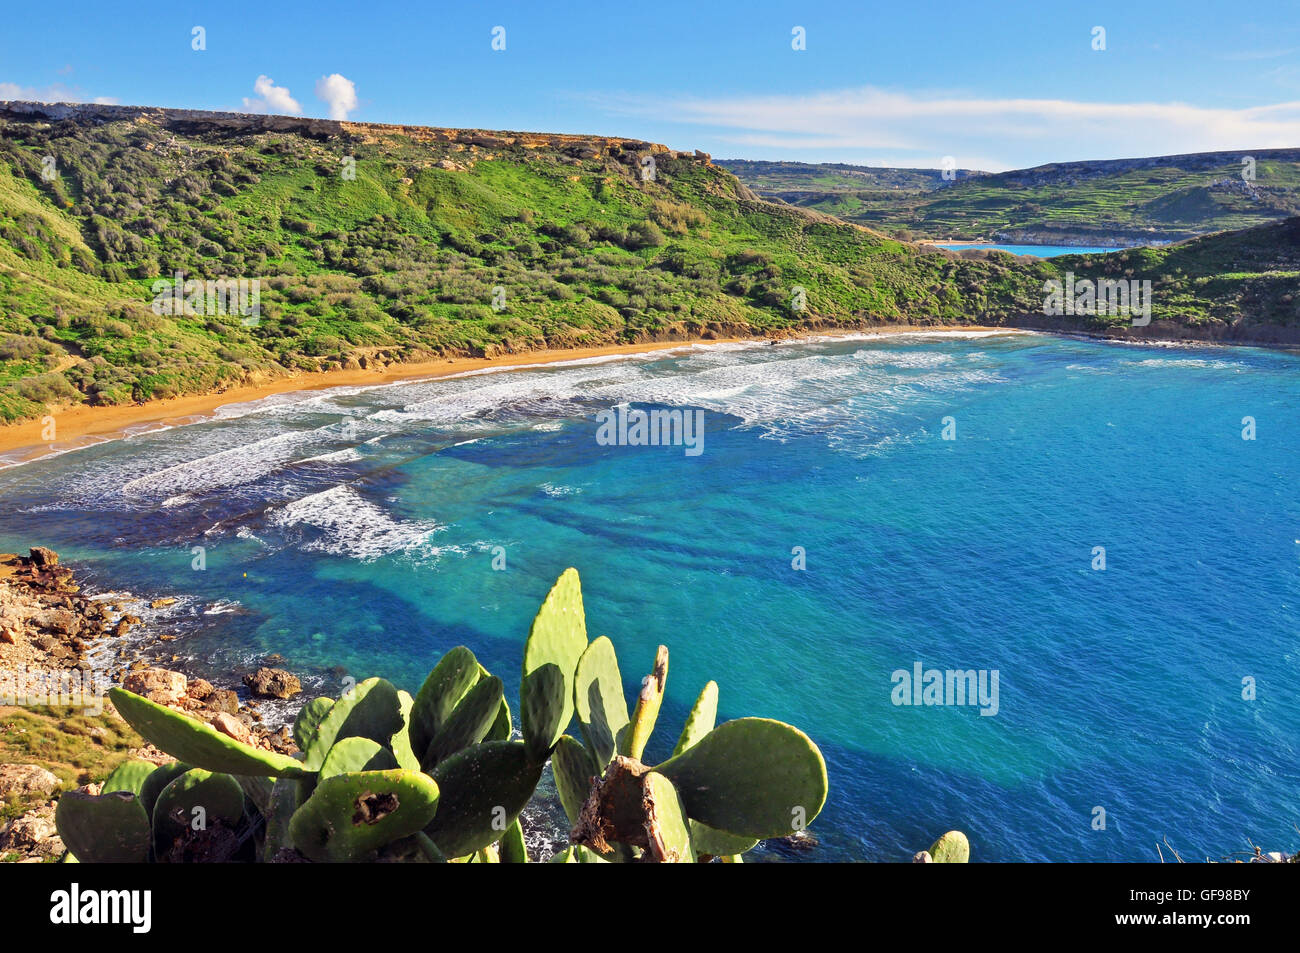 Amazing landscape, Maltese Islands Stock Photo